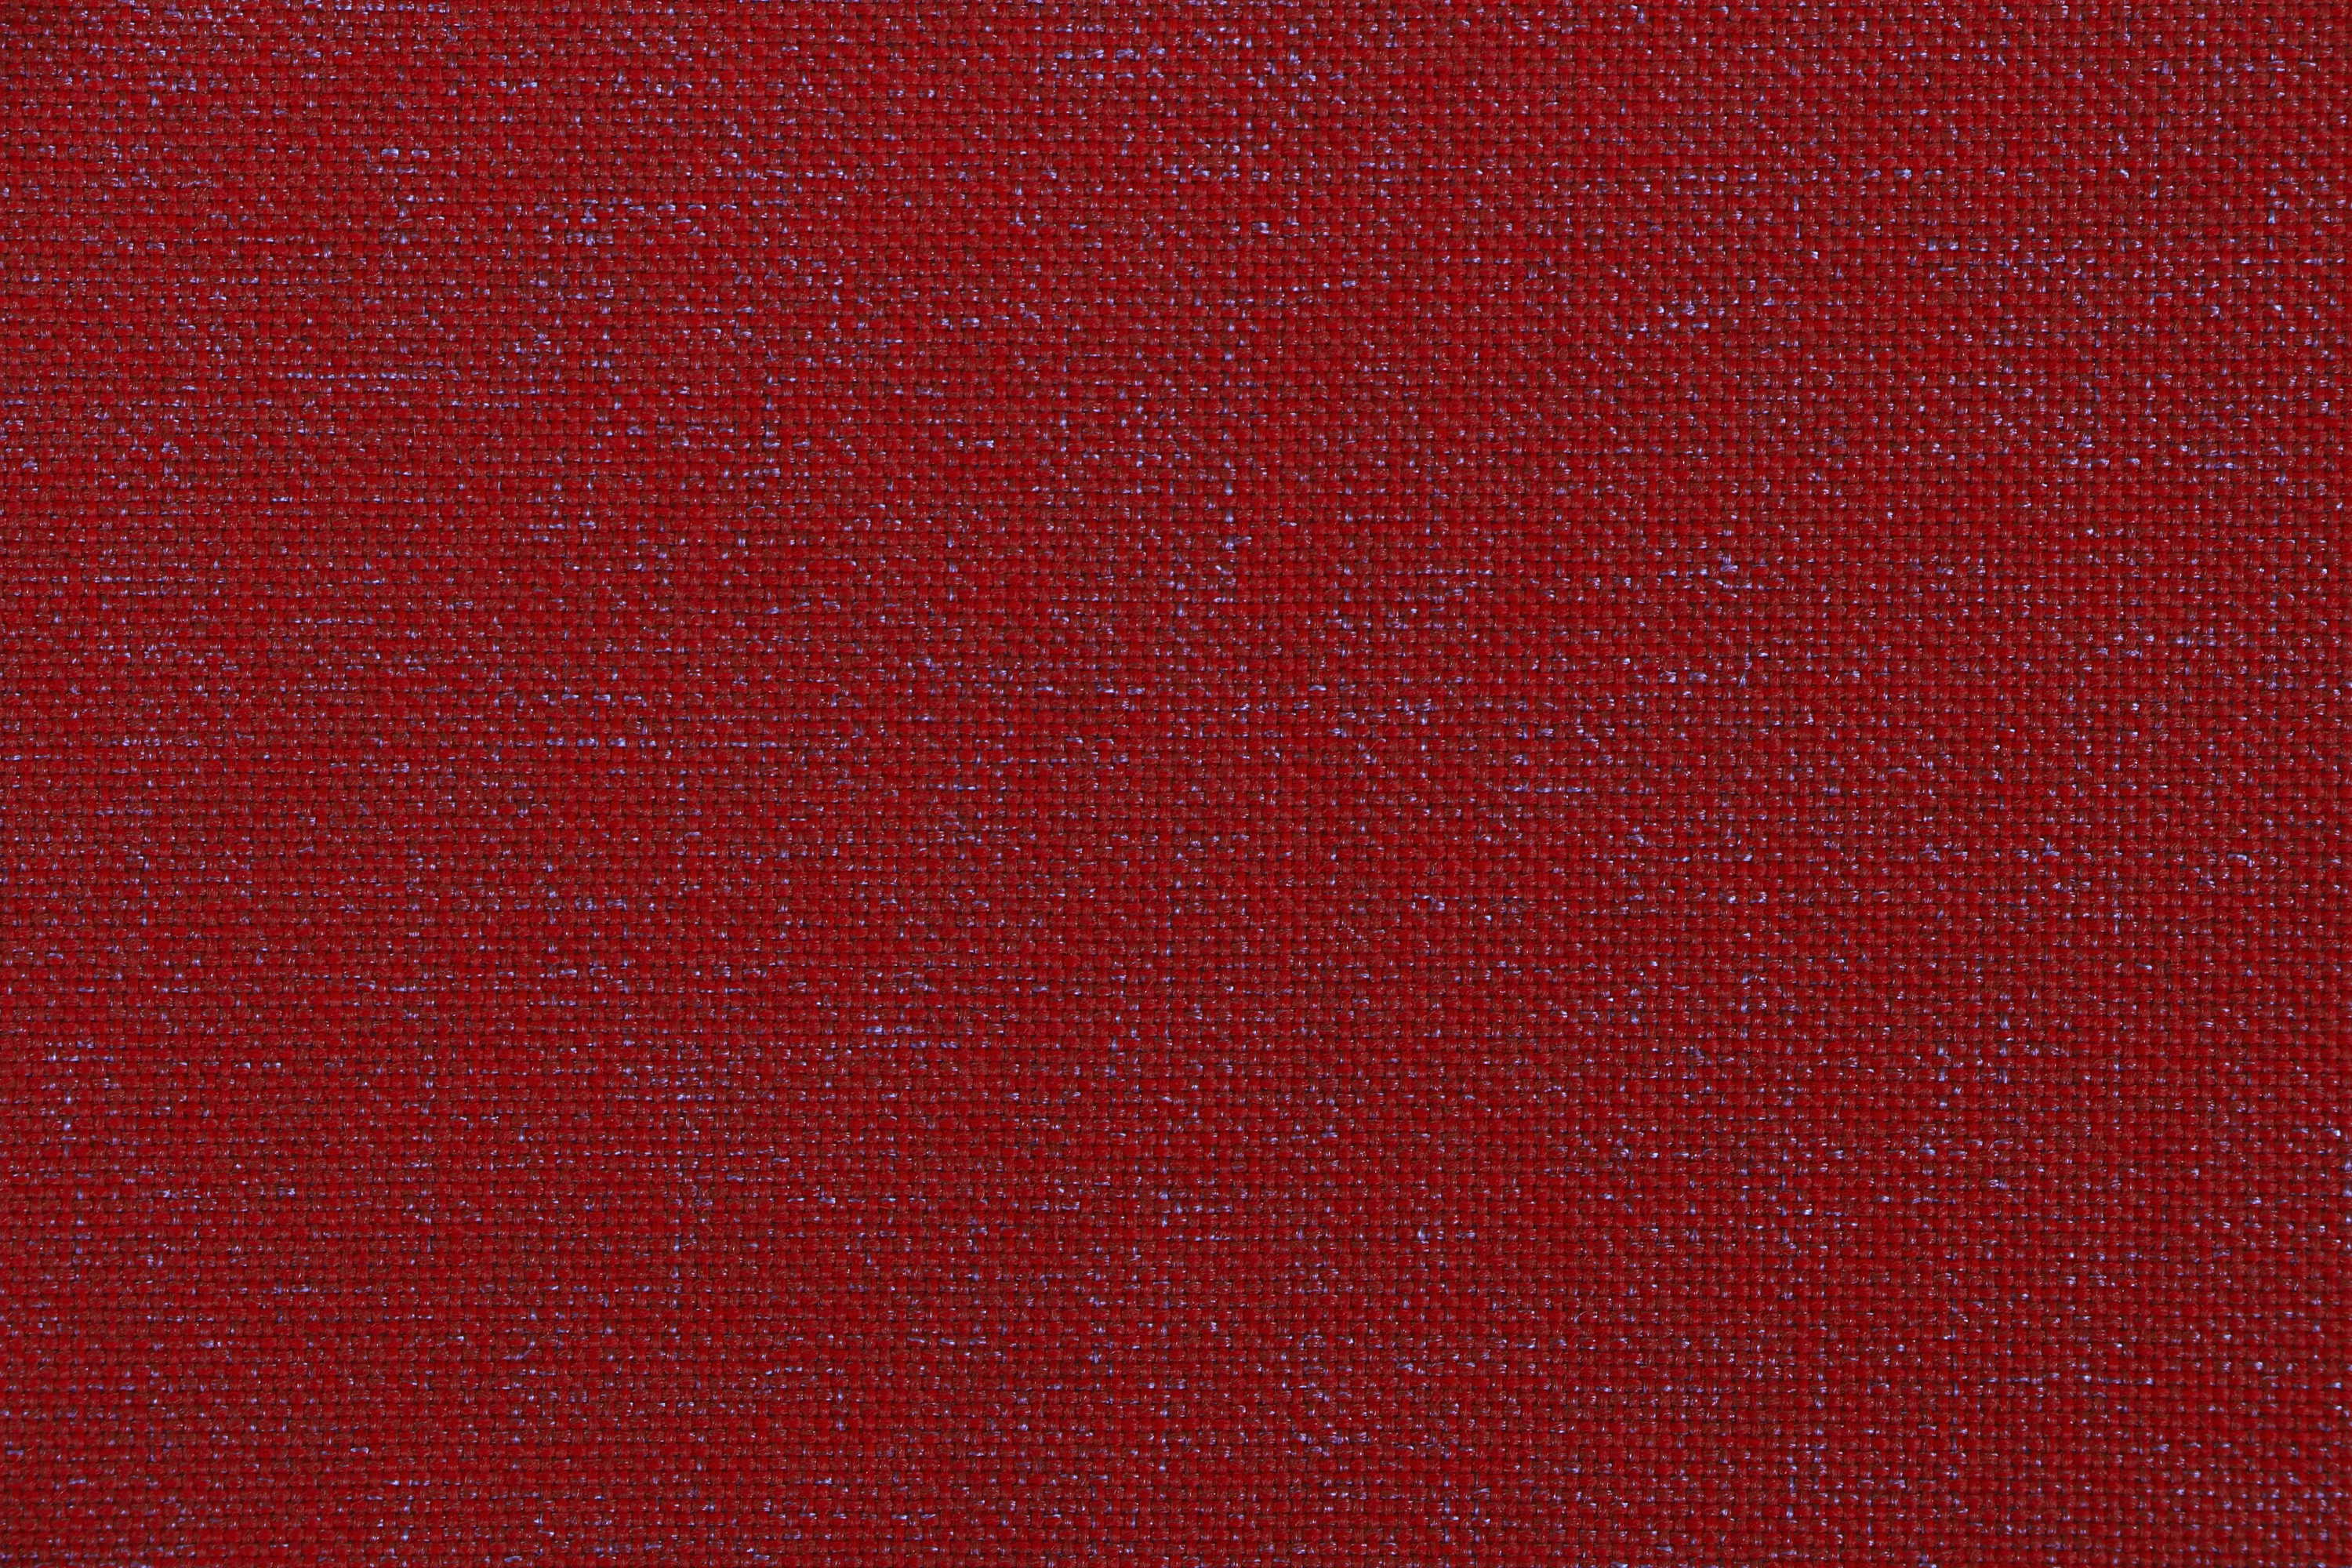 Siena Garden Sesselauflage Musica 100 cm x 48 cm x 3 cm Rot kaufen bei OBI